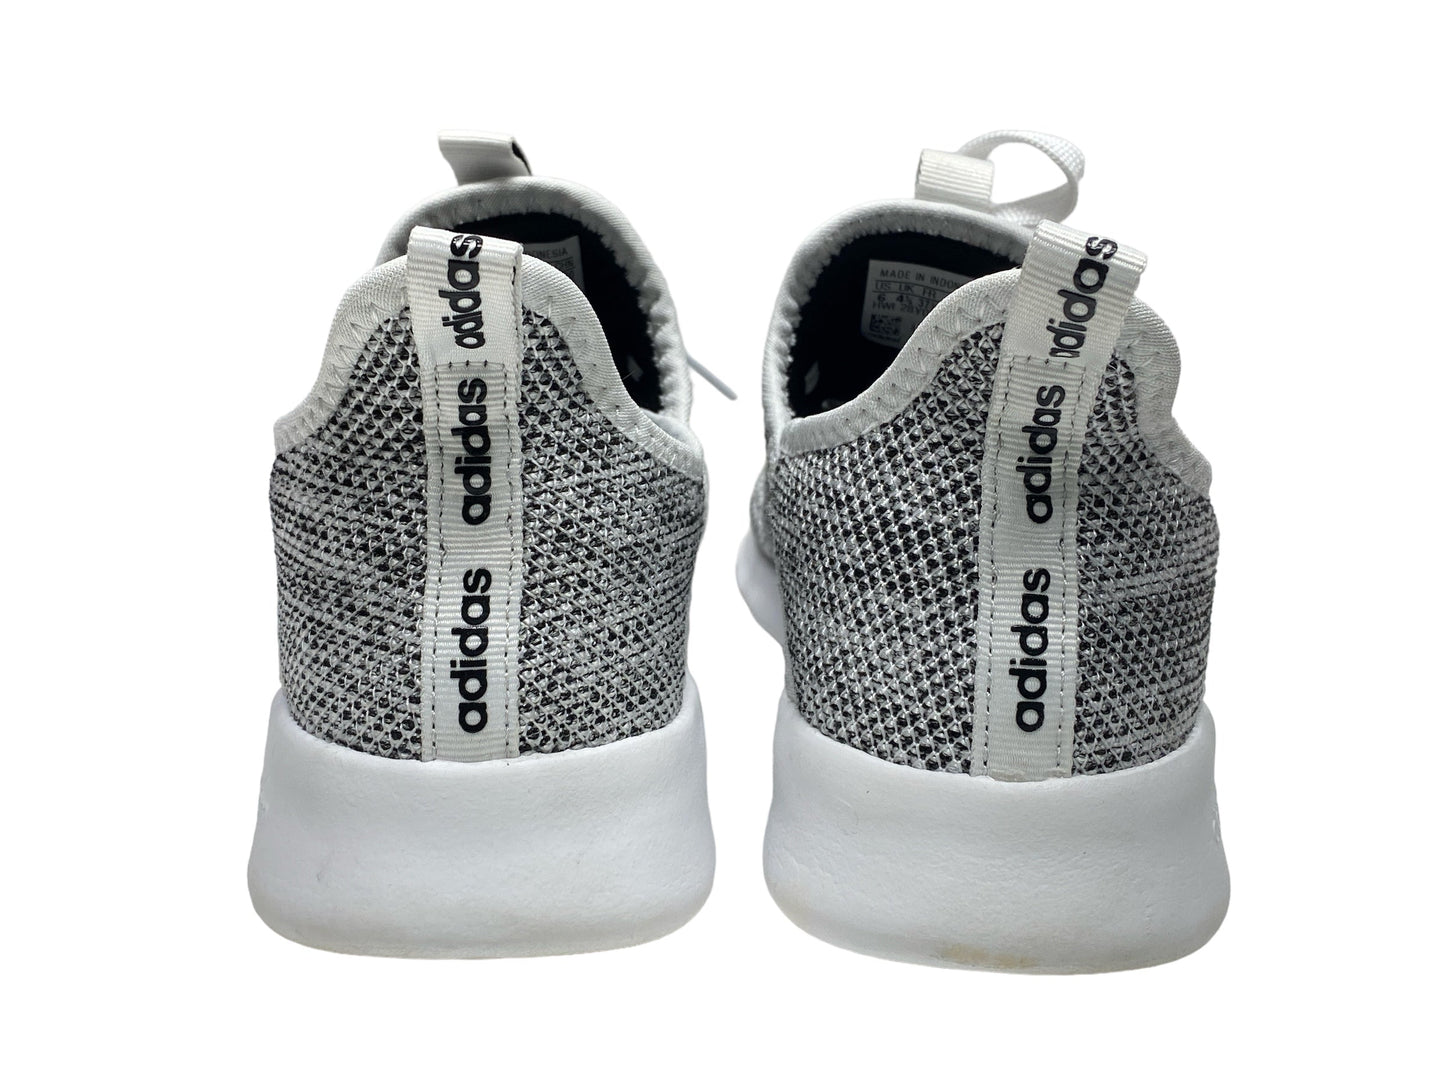 Grey & White Shoes Athletic Adidas, Size 6